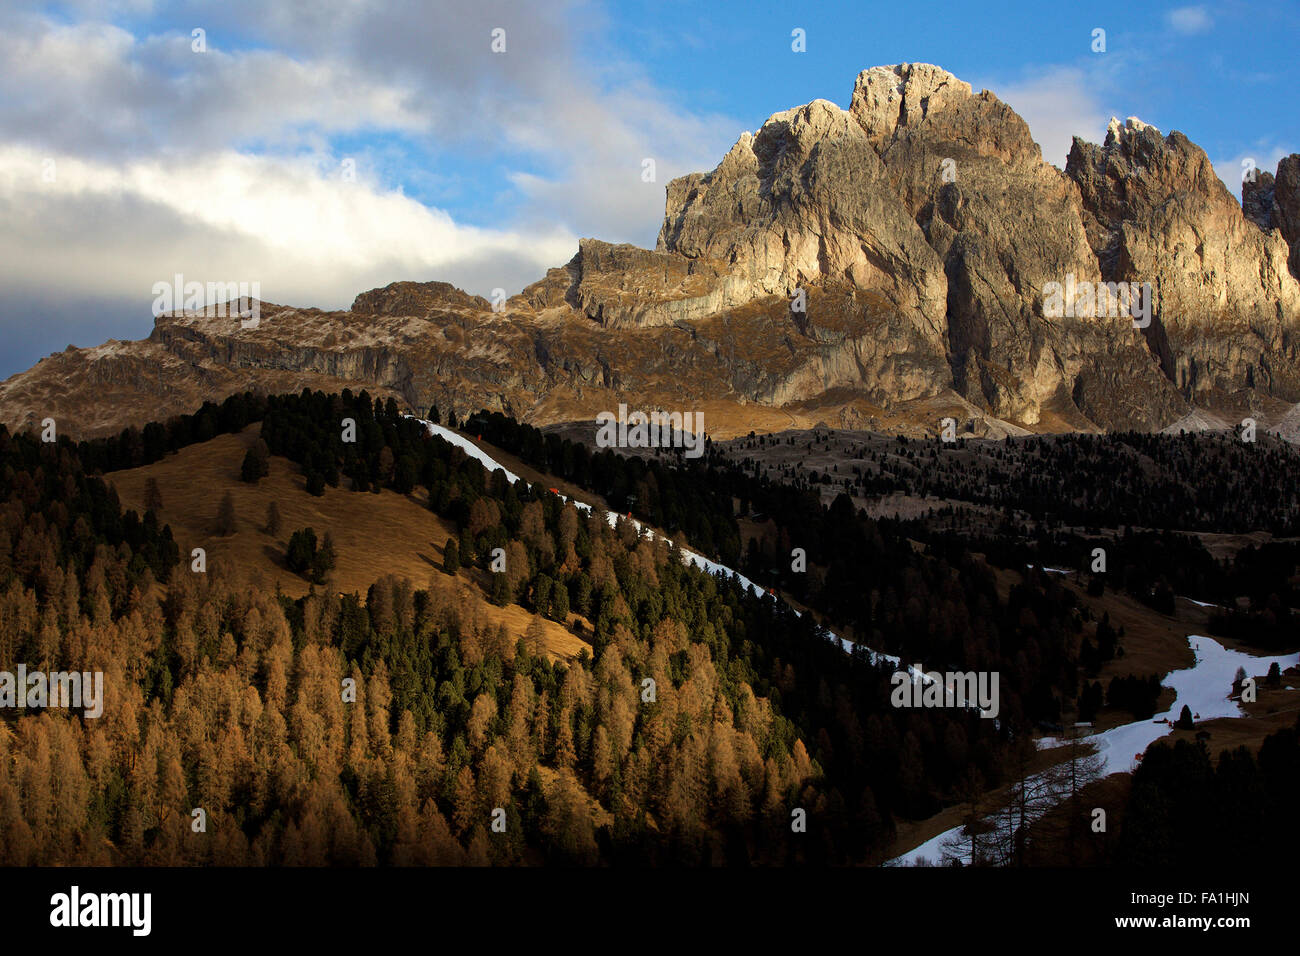 (151220) -- Selva di Val Gardena, Italia, Dicembre 20, 2015 (Xinhua) -- Foto scattata a Dic. 17 mostra le Dolomiti a Selva di Val Gardena Italia settentrionale. Le Dolomiti sono una catena montuosa situata nel nordest d'Italia. In agosto 2009, le Dolomiti sono state dichiarate patrimonio mondiale dell UNESCO. Le Dolomiti sono una serie di altamente distintivo paesaggi di montagna che sono di eccezionale bellezza naturale. Le montagne sono anche importanti di scienza della terra valori. (Xinhua/Jin Yu) Foto Stock